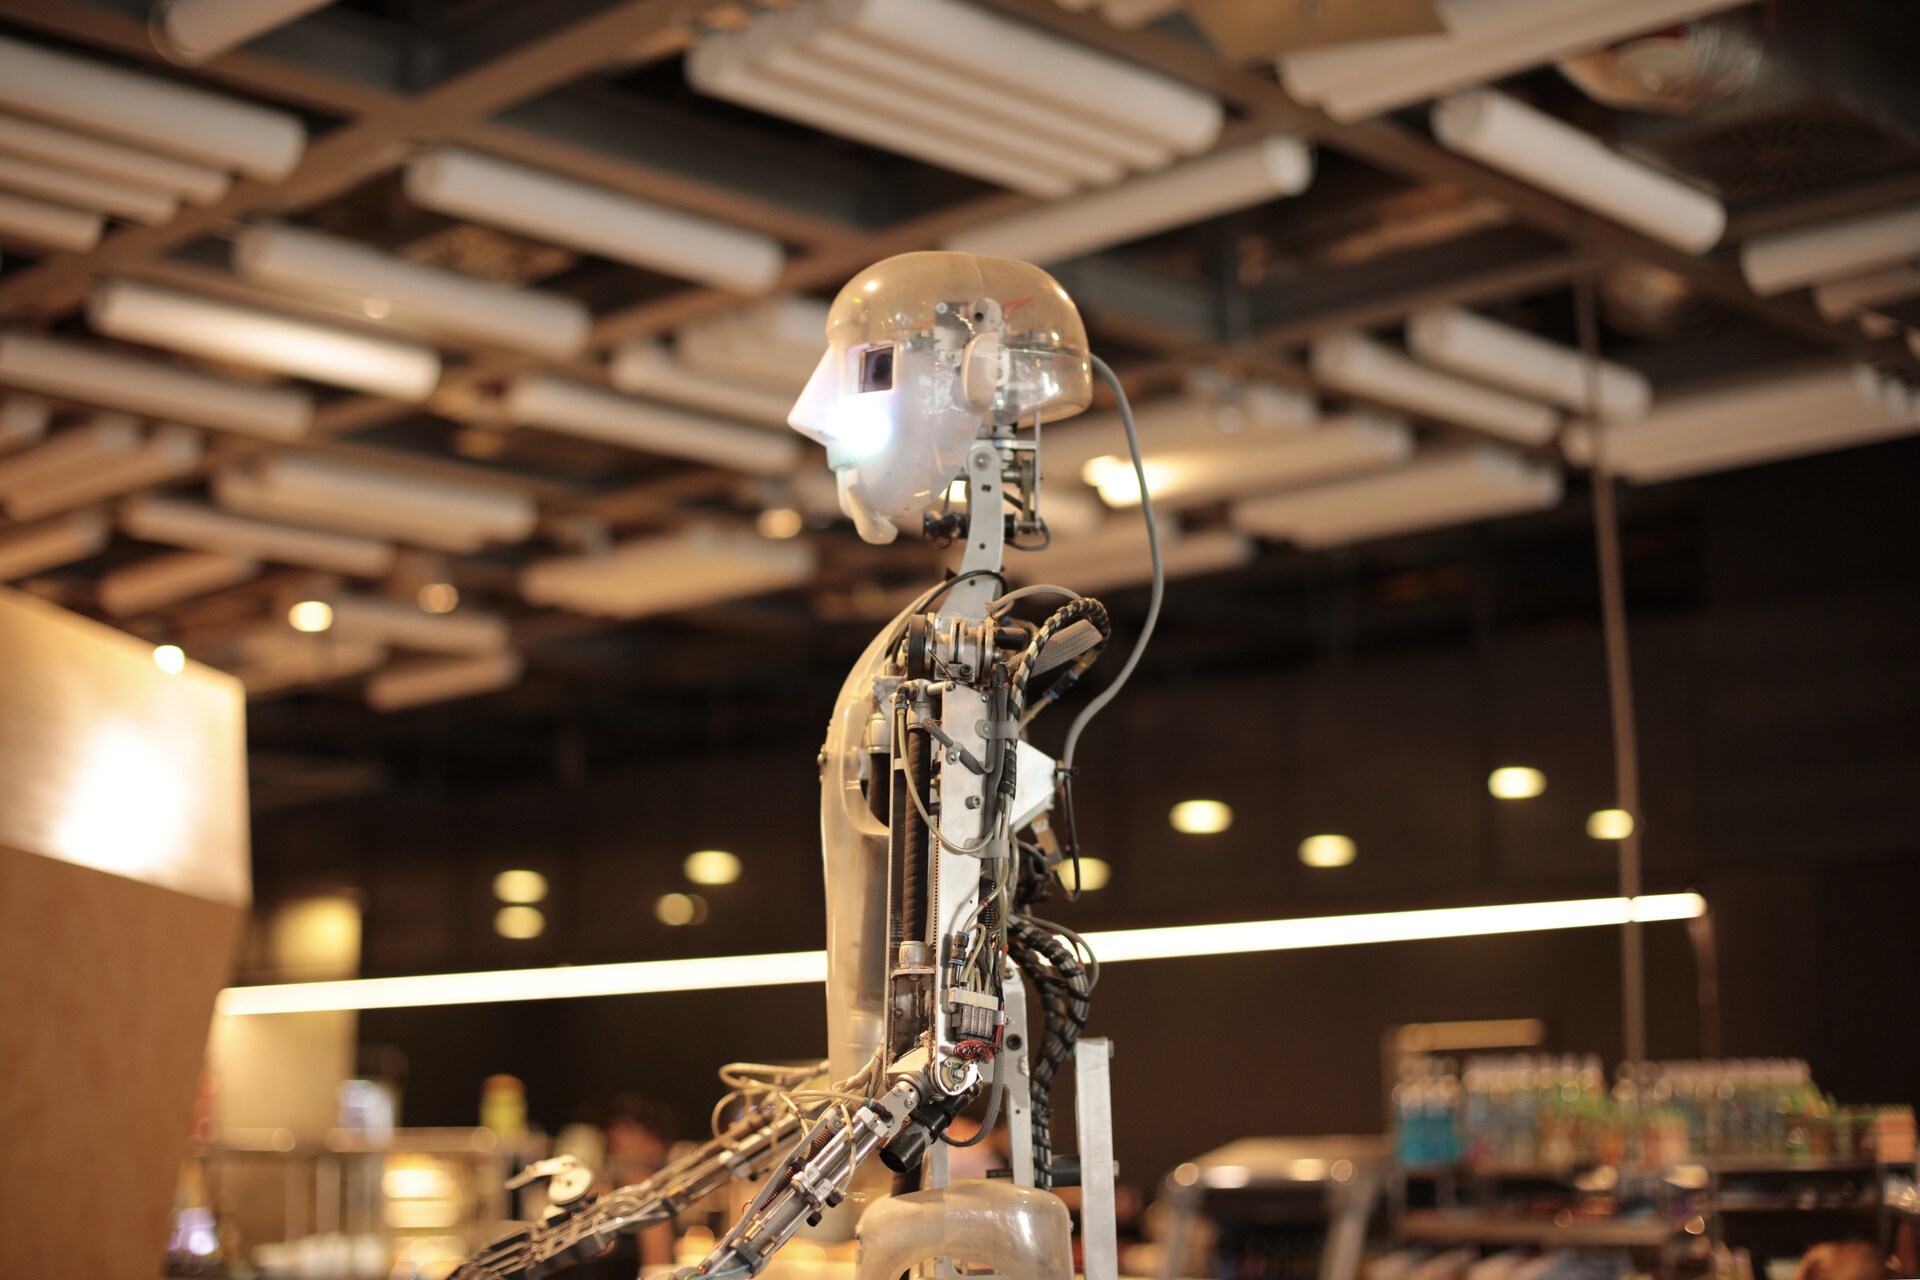 Moderan robot s gotovo ljudskim osobinama